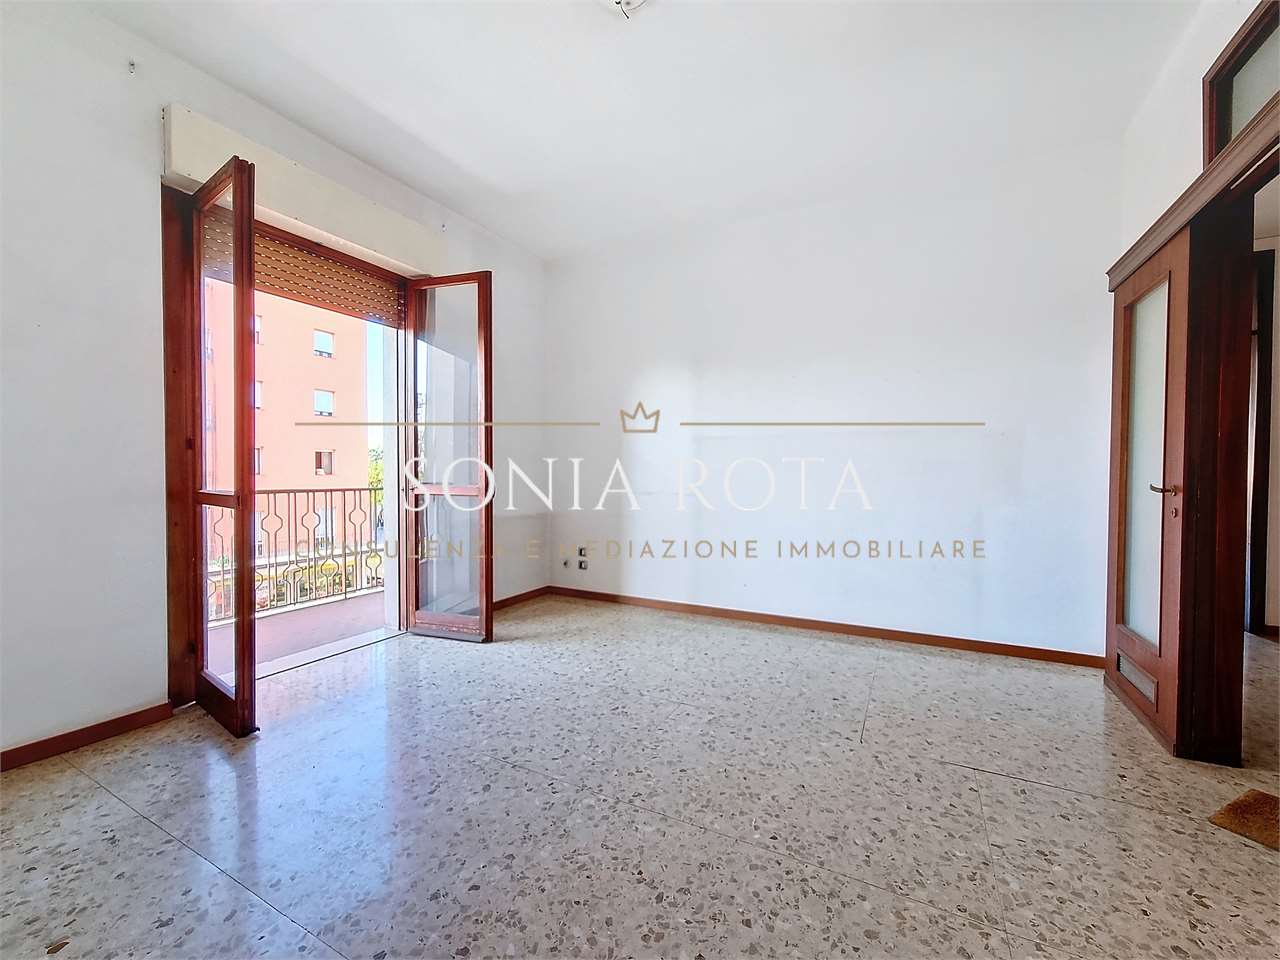 Appartamento in vendita a Seriate, 3 locali, prezzo € 110.000 | PortaleAgenzieImmobiliari.it